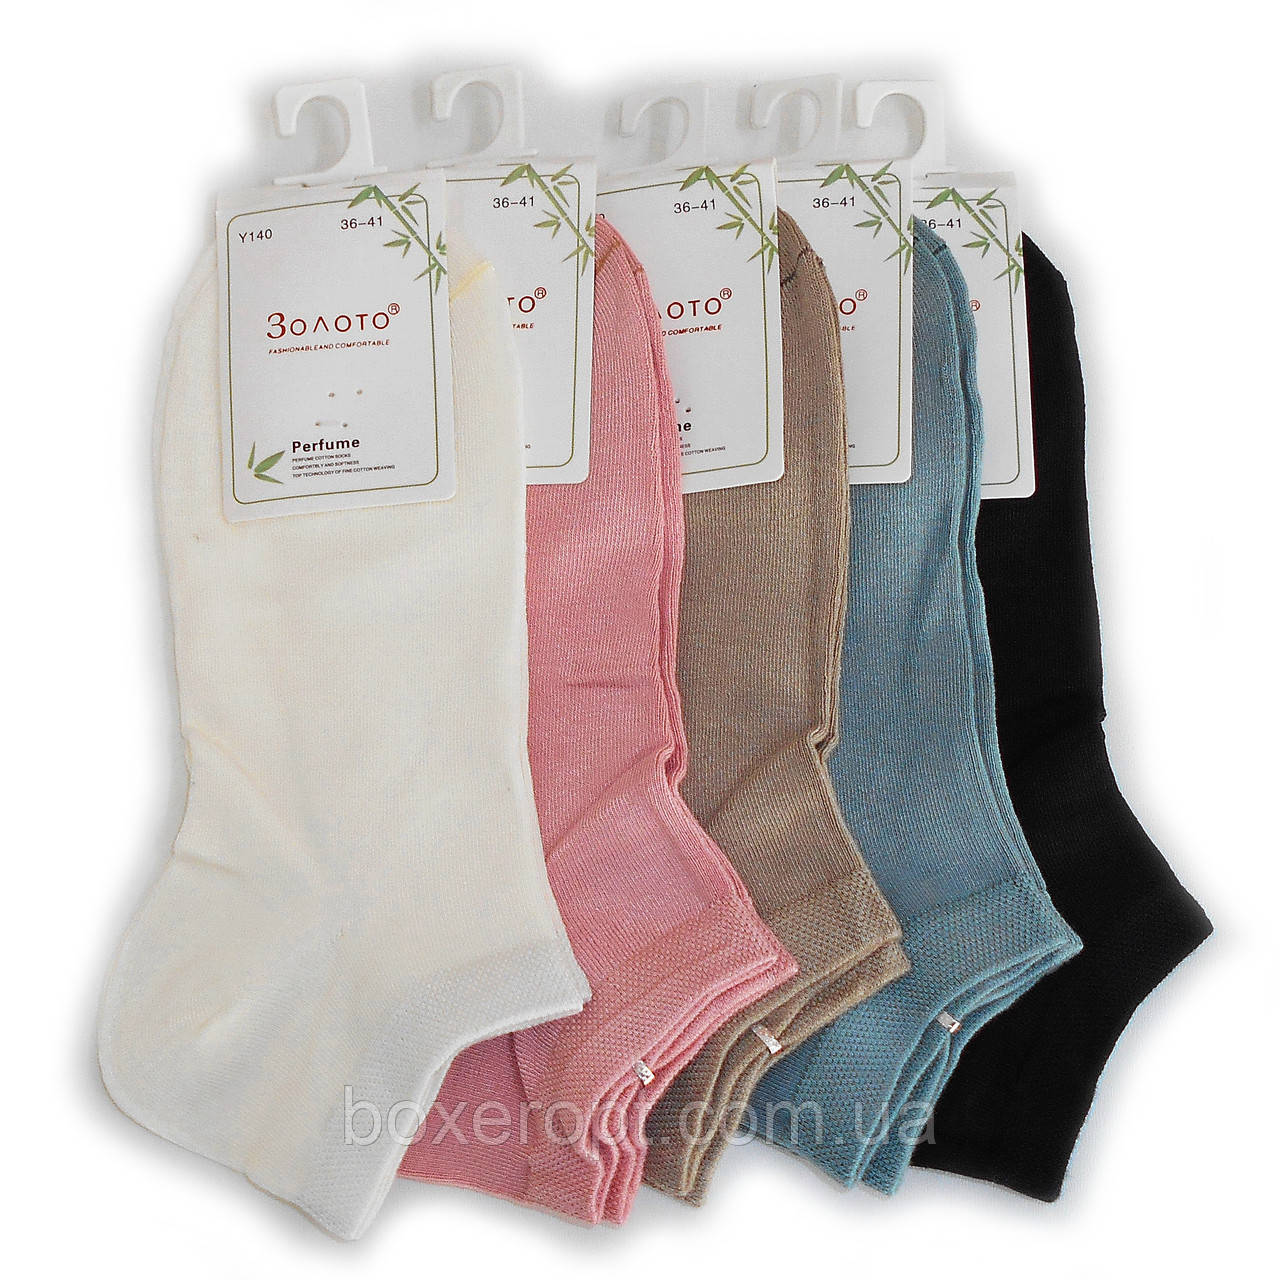 Жіночі бамбукові шкарпетки Золото - 21.00 грн./пара (ароматизовані, Y140)